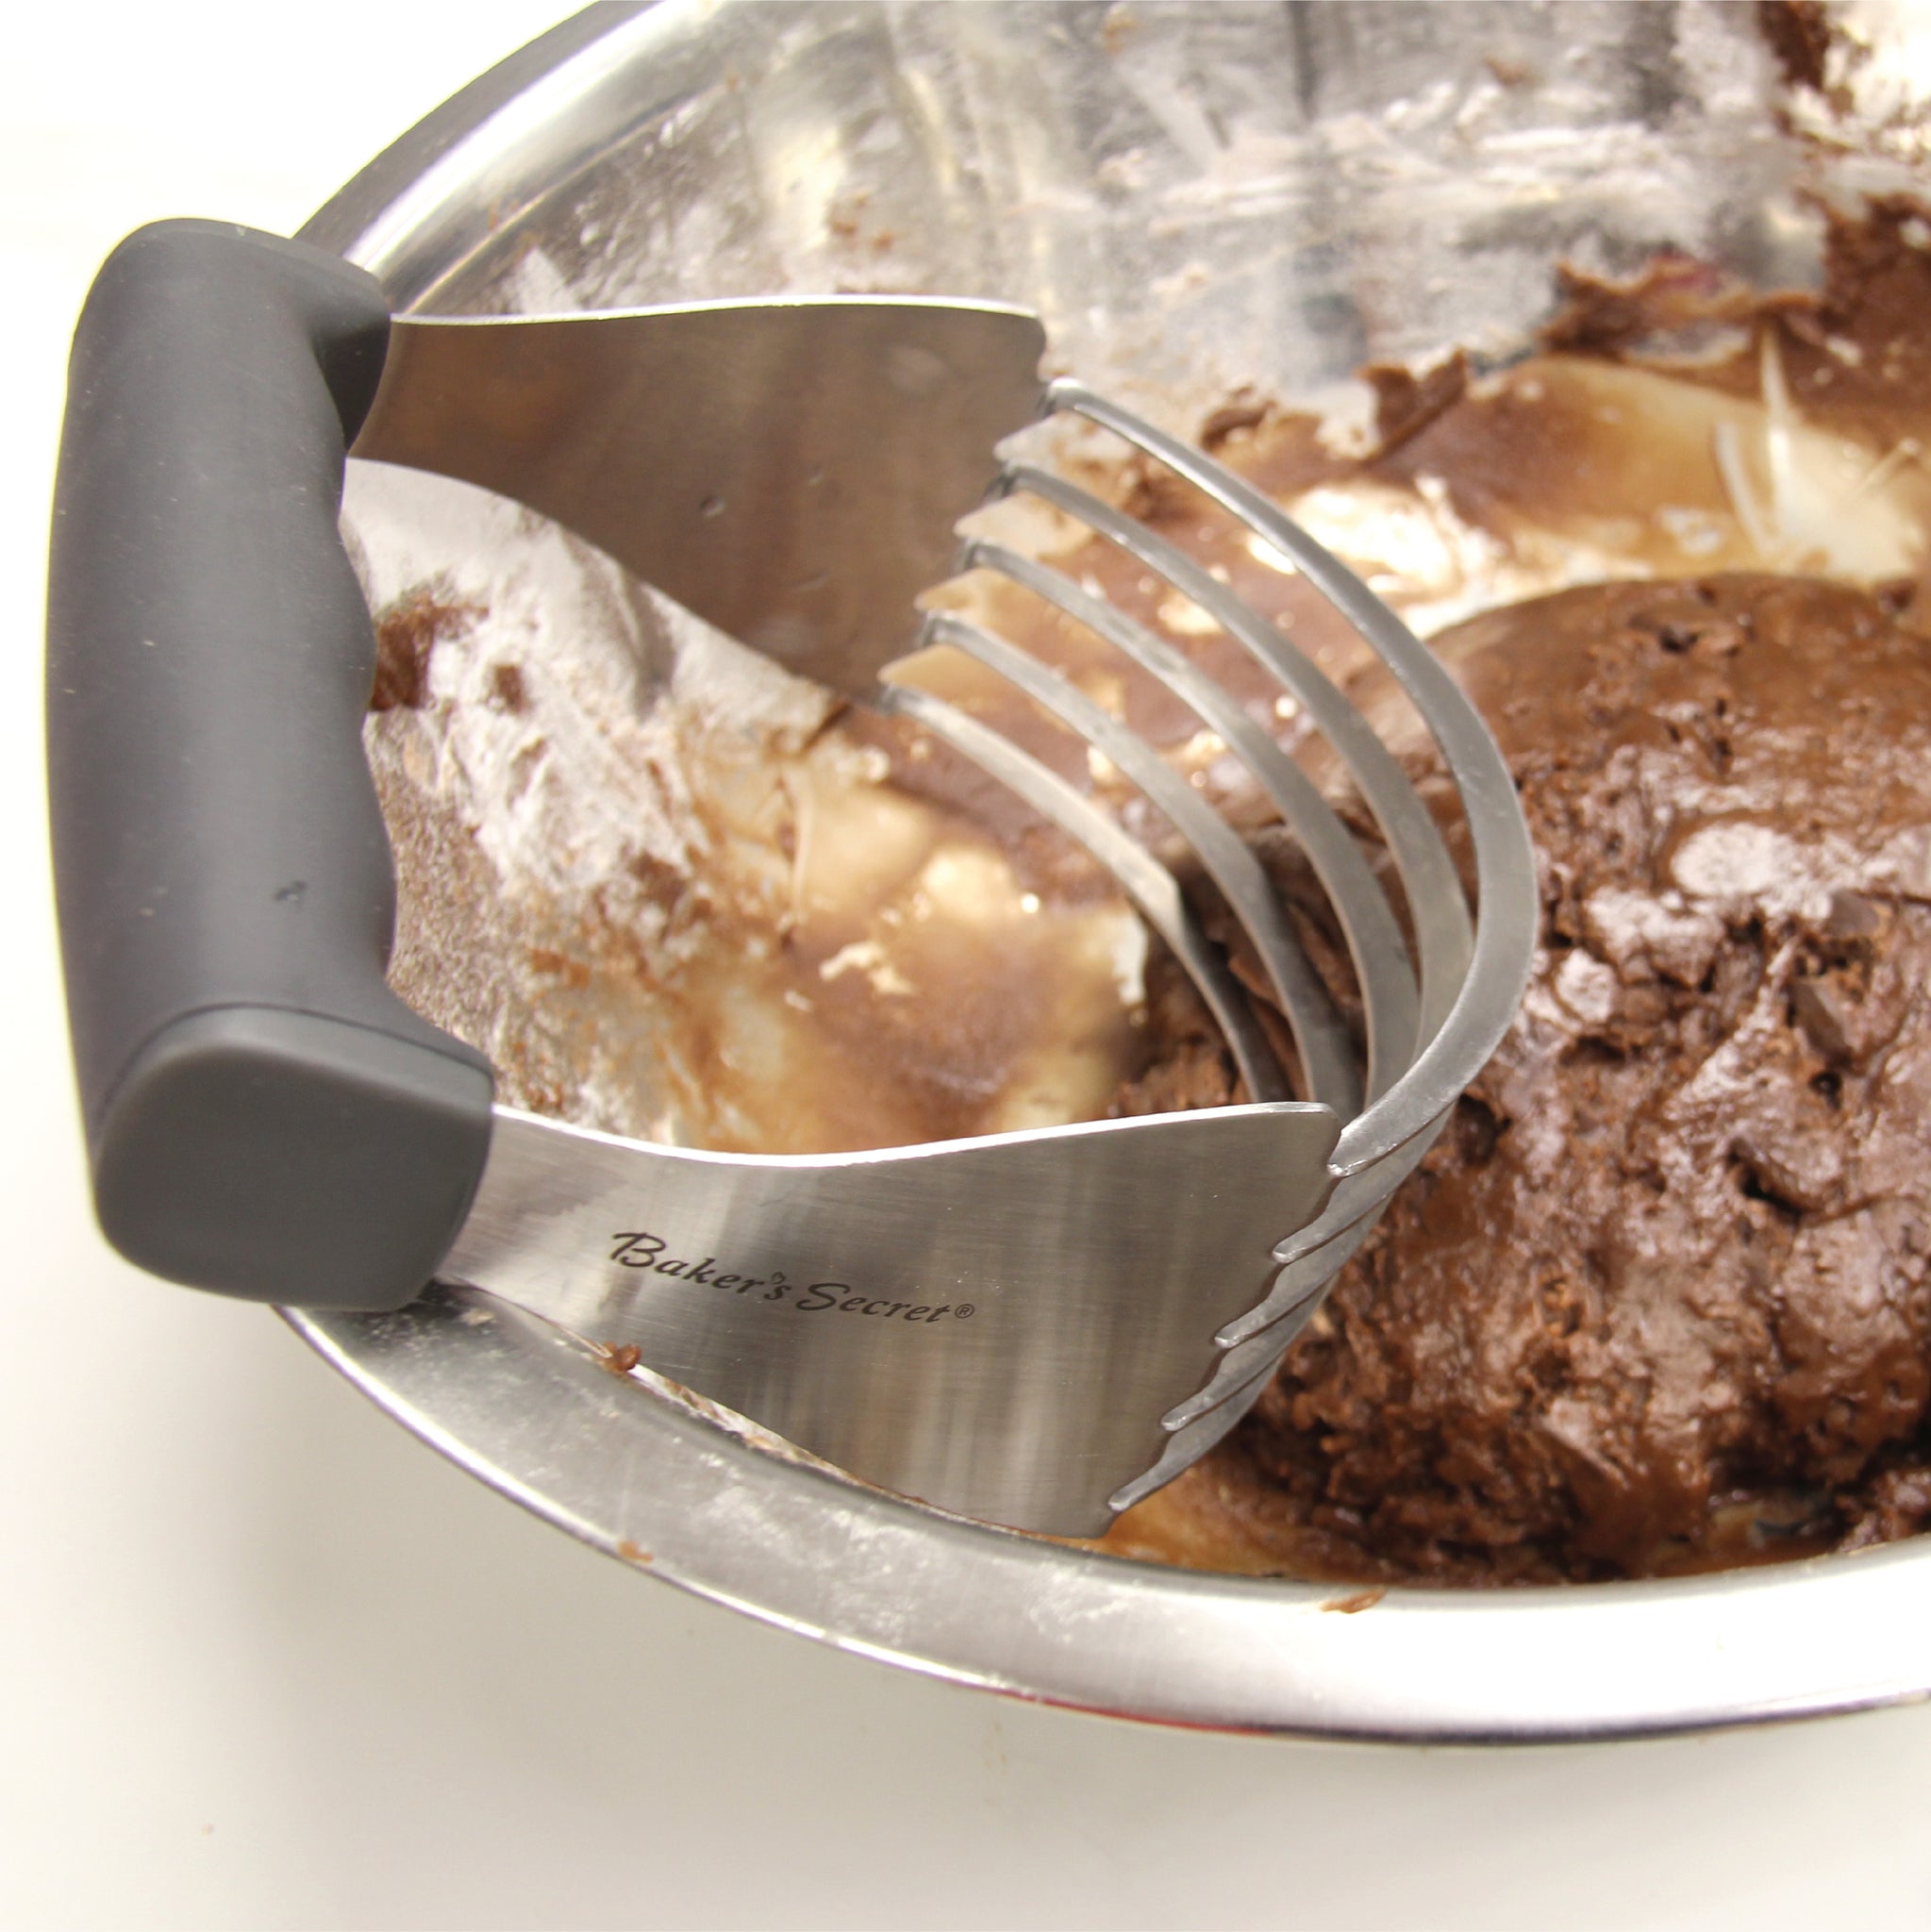 Stainless Steel Dough Blender  Bakeware Accessories - Baker's Secret